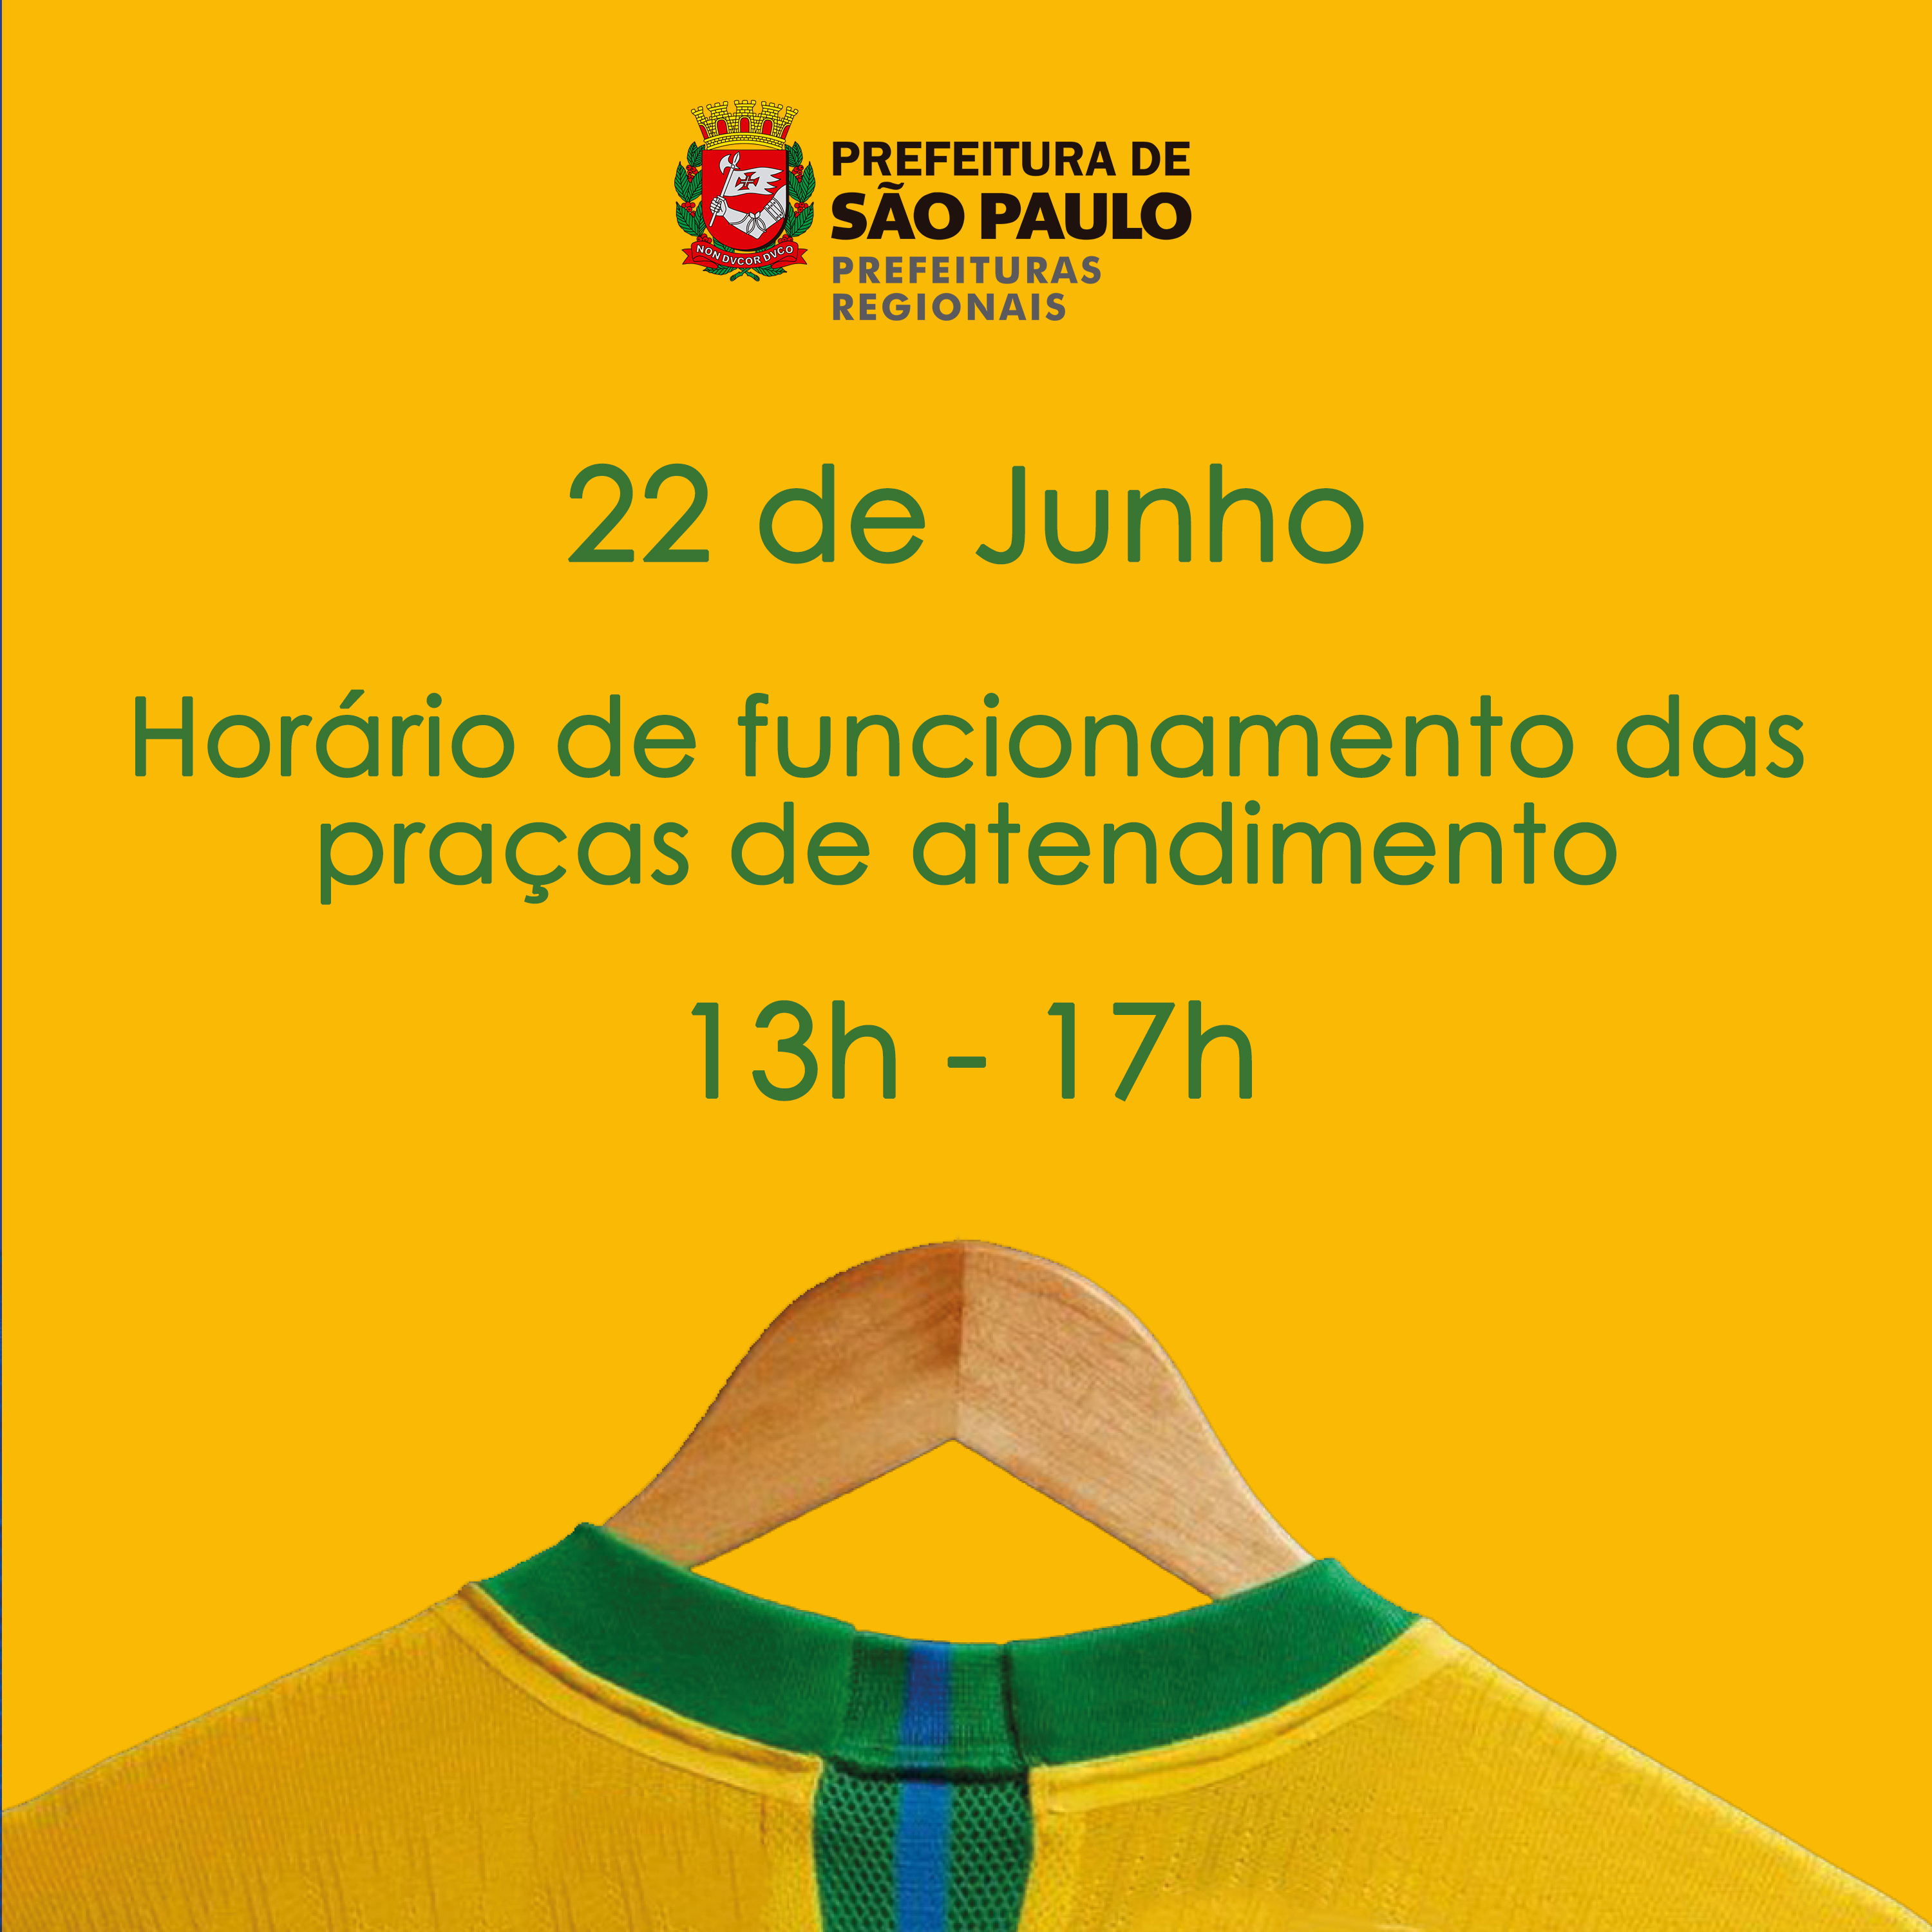 Horário de funcionamento nos dias de jogos da Seleção Brasileira